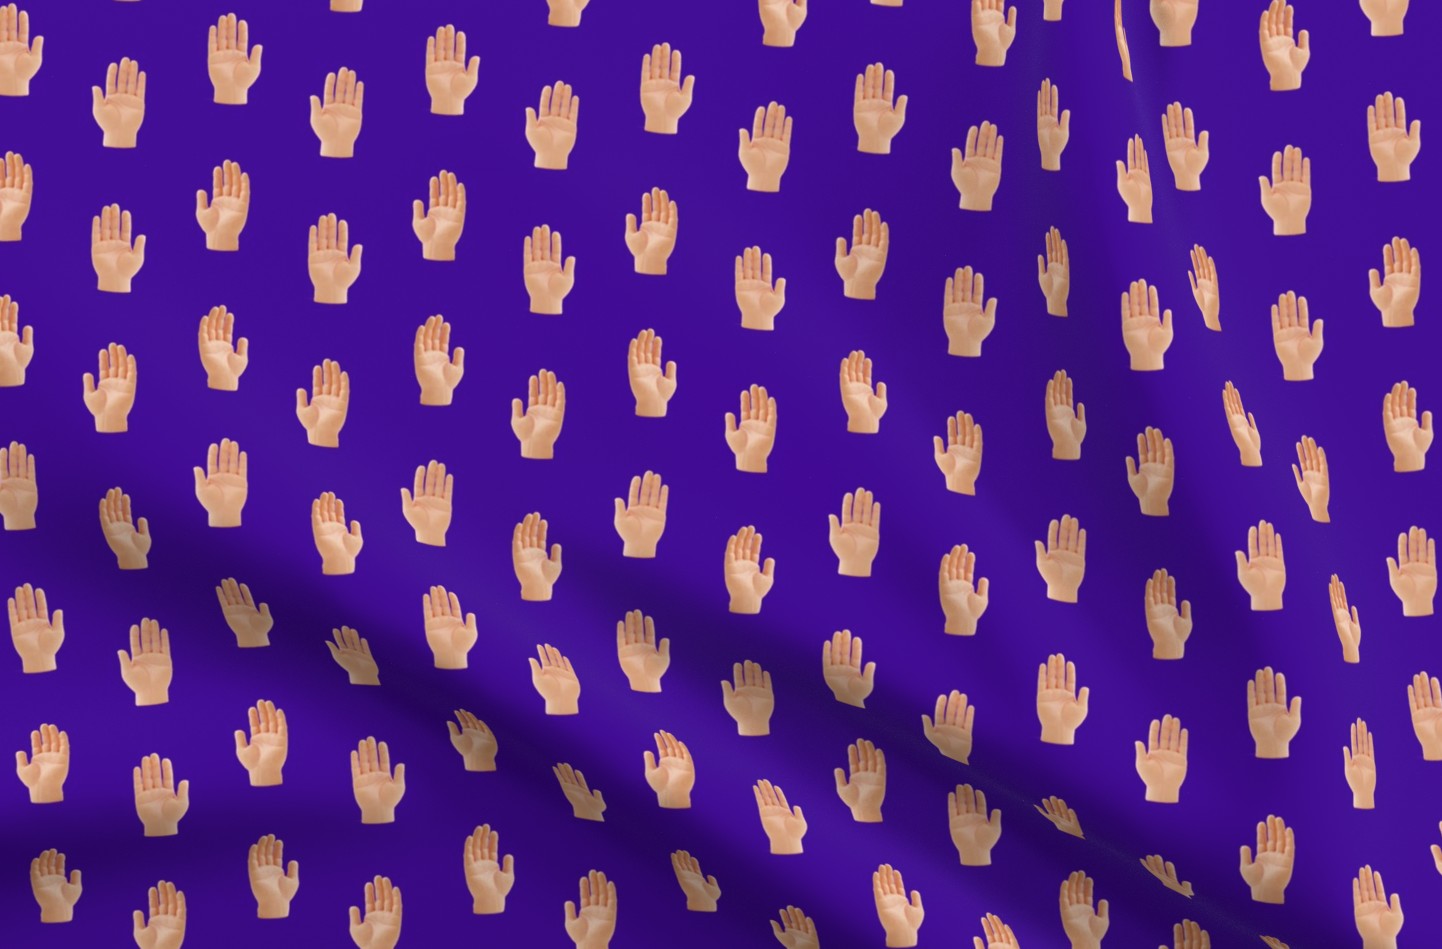 Hands (Purple) Printed Fabric by Studio Ten Design